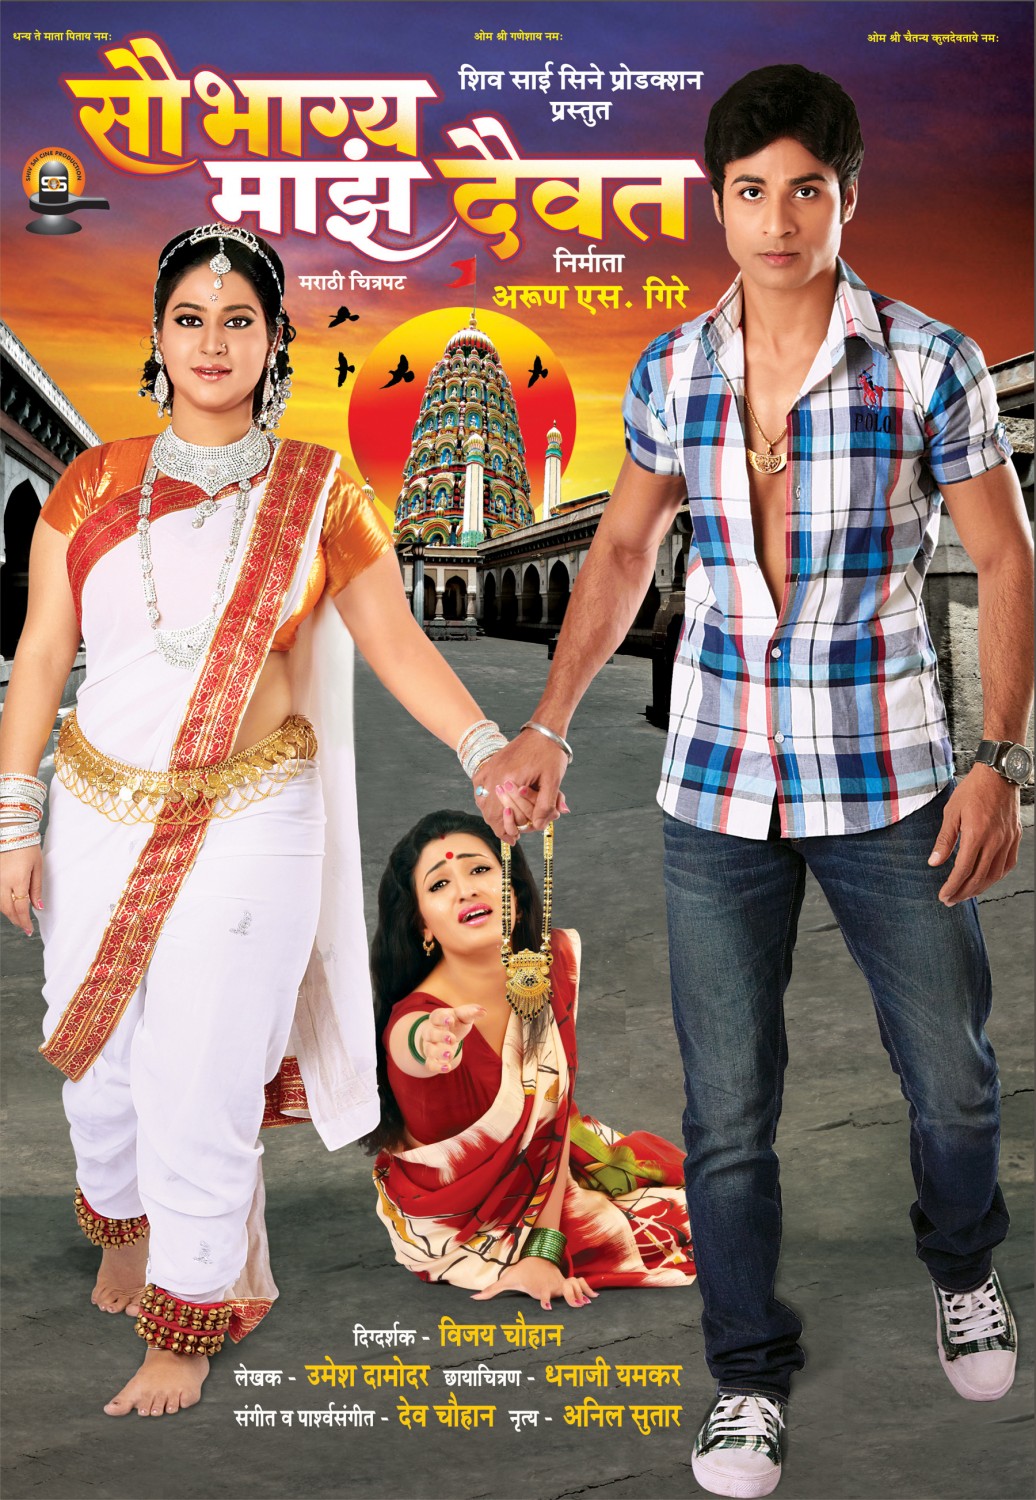 Extra Large Movie Poster Image for Saubhagya Maza Daiwat (#2 of 2)